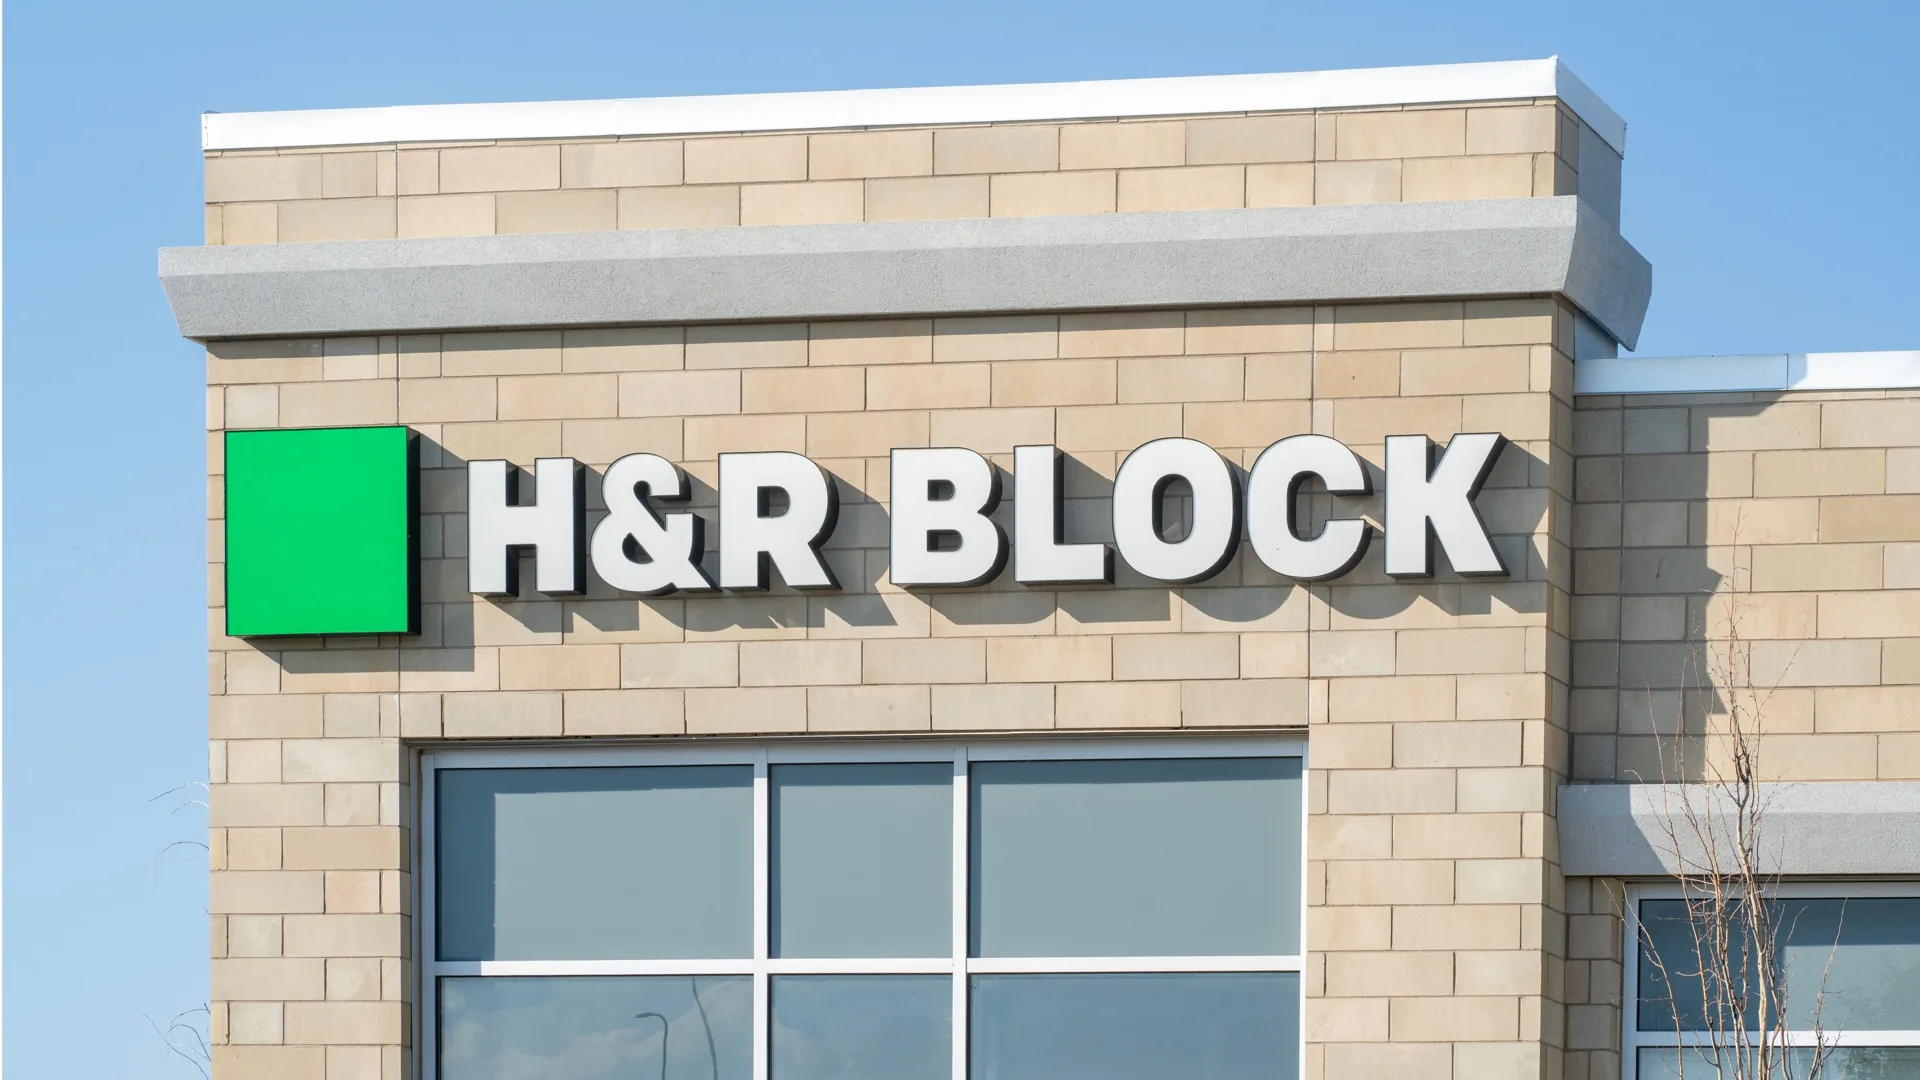 HR-Block